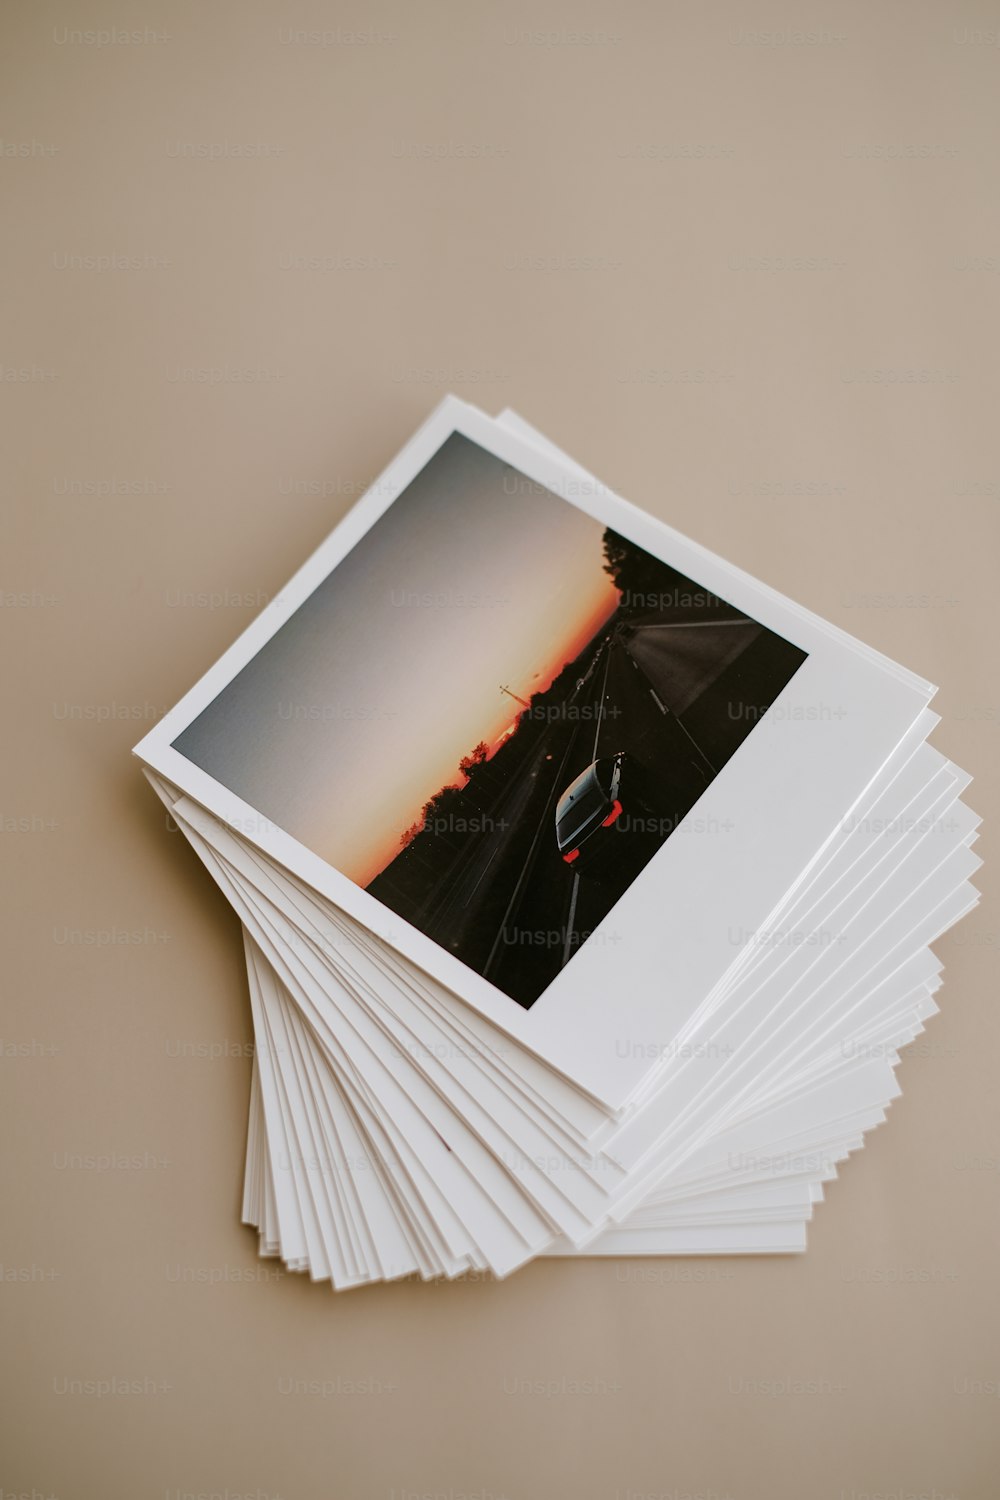 Una pila de fotos Polaroid encima de una mesa